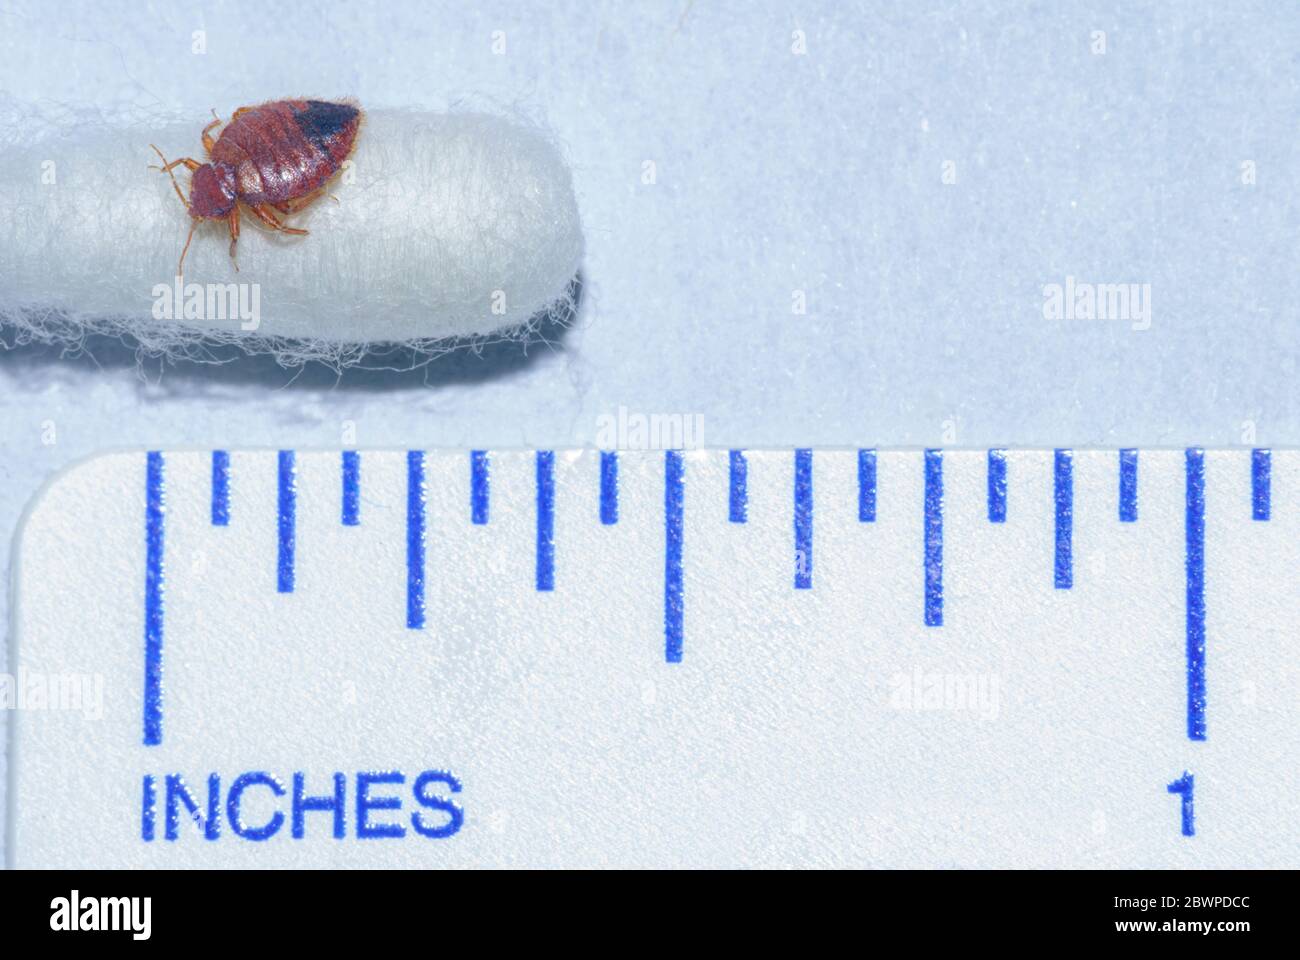 Bedbug comune adulto- Bug letto (Cimex lectularius) alla fine di cotone tampone con righello che mostra la dimensione relazionale di questo insetto parassita. Foto scattata in Colorado. Foto Stock